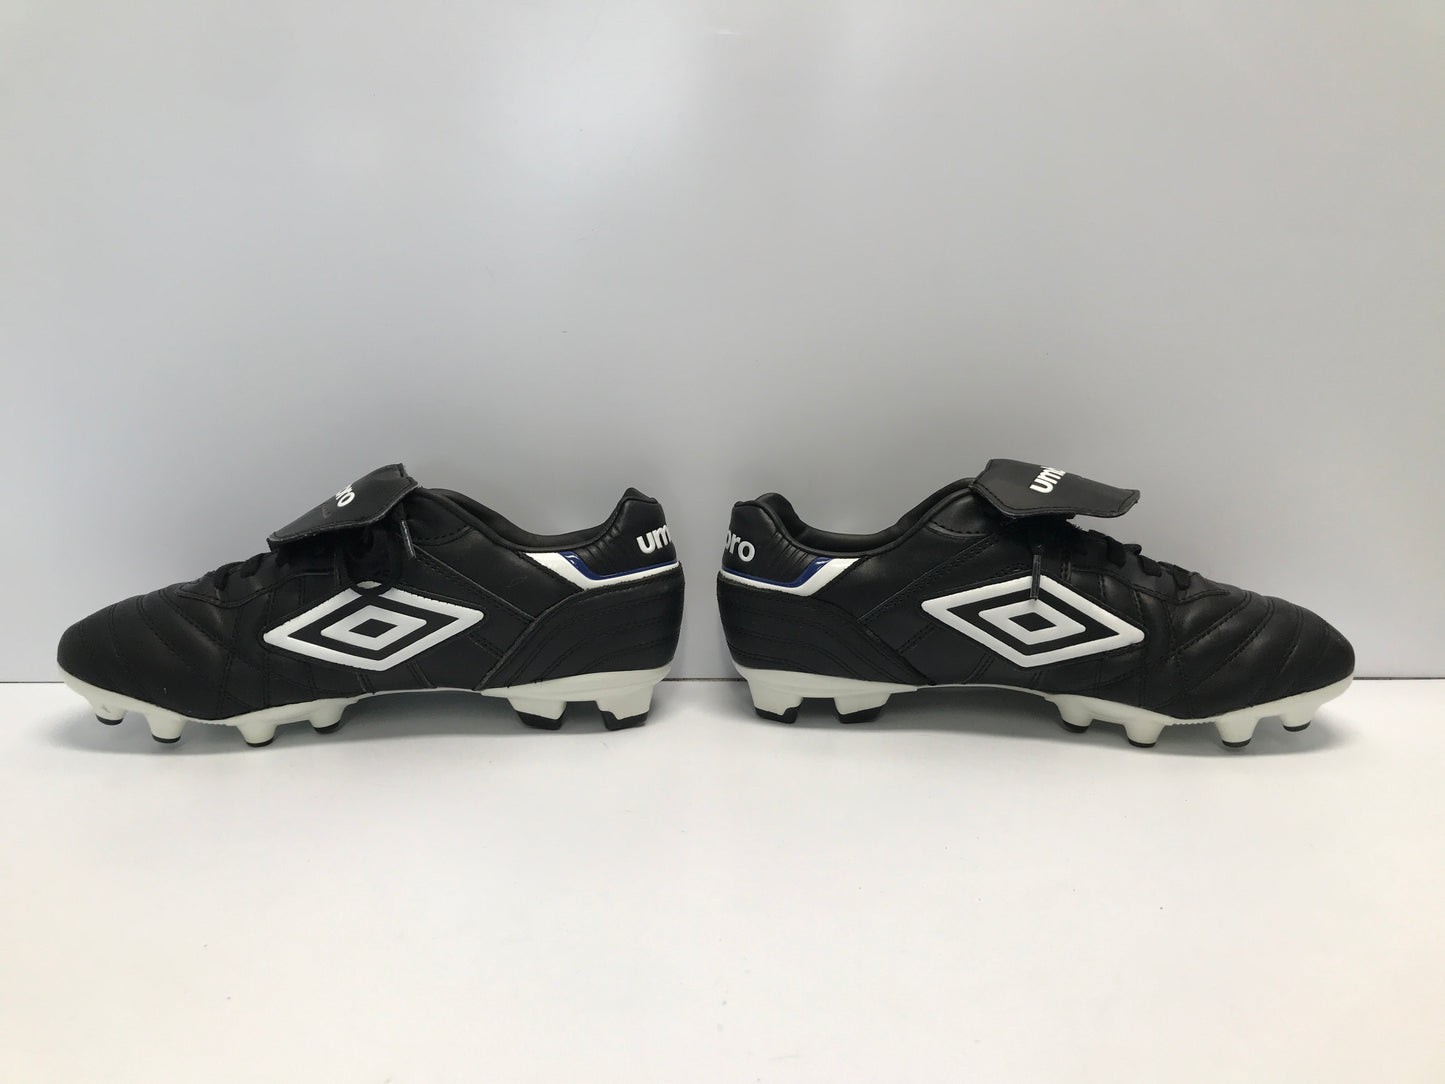 Soccer Shoes Cleats Men's Size 9 Umbro Black White Excellent